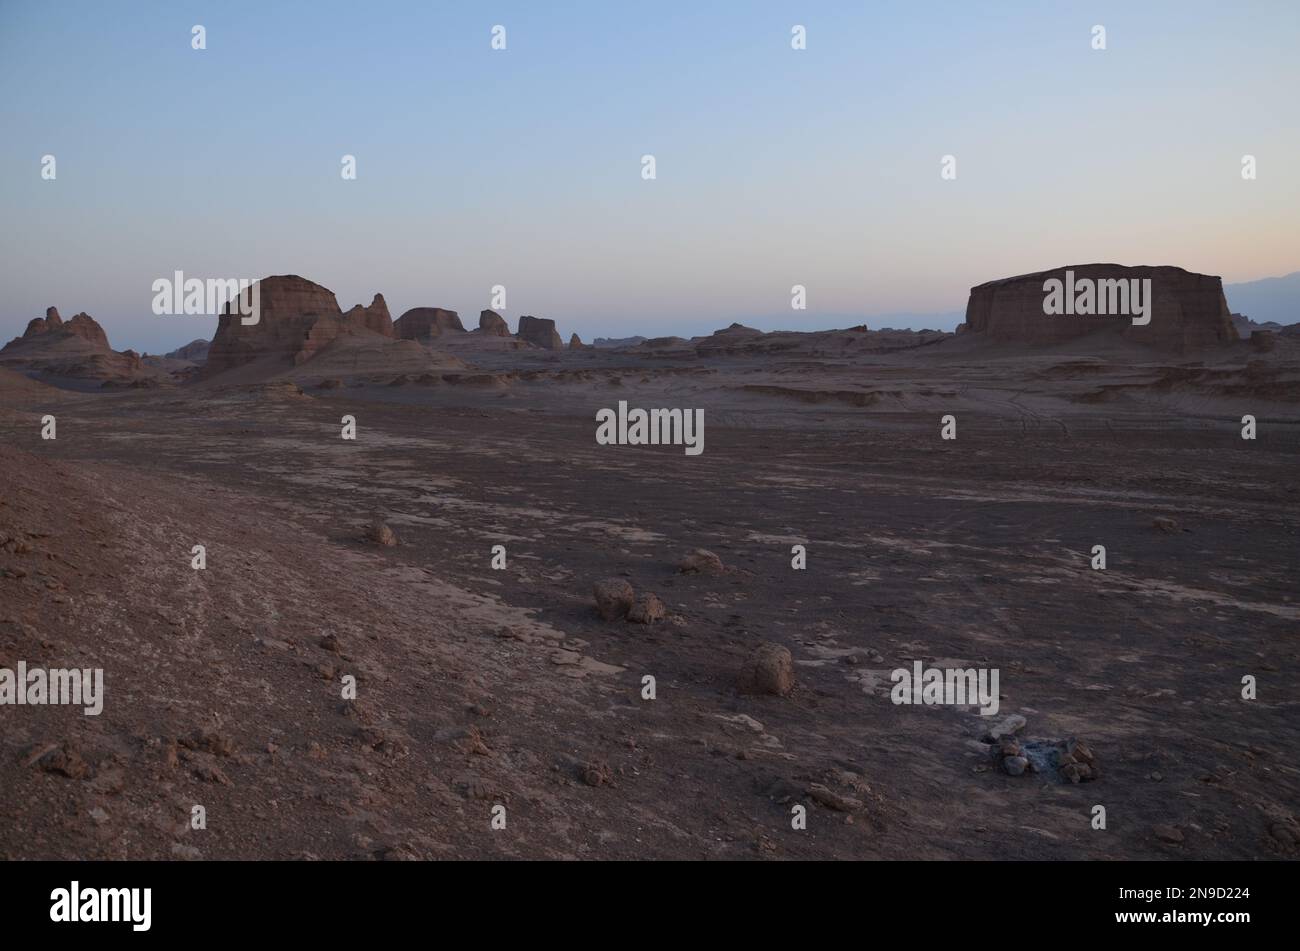 dry desert landscape of 'Kalouts desert', Iran in evening light Stock Photo